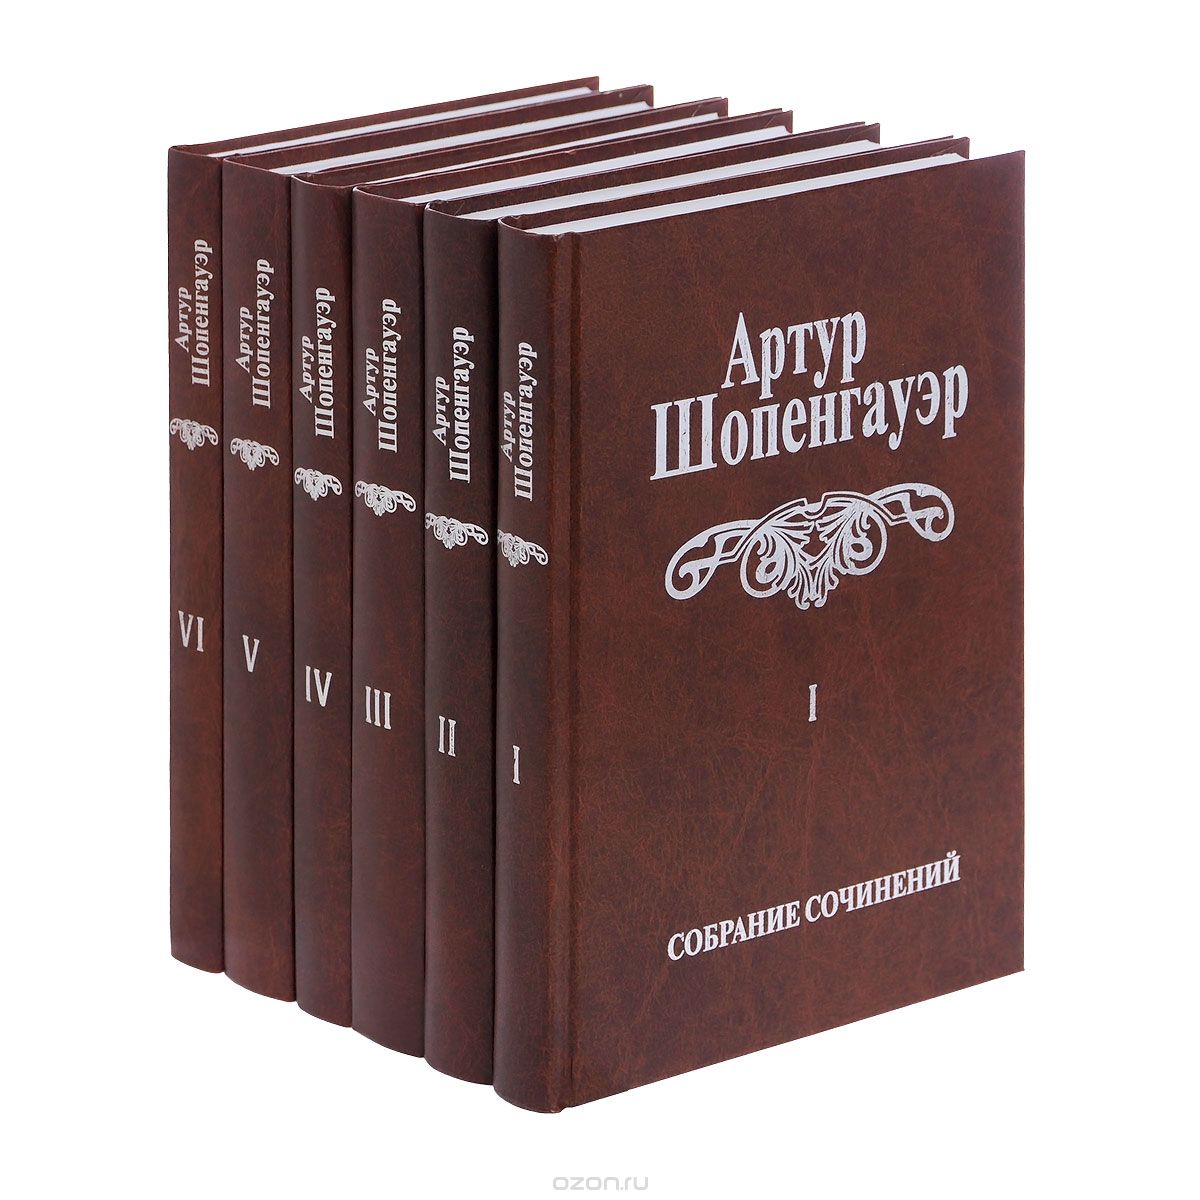 Скачать книгу "Артур Шопенгауэр. Собрание сочинений в 6 томах (комплект из 6 книг), Артур Шопенгауэр"